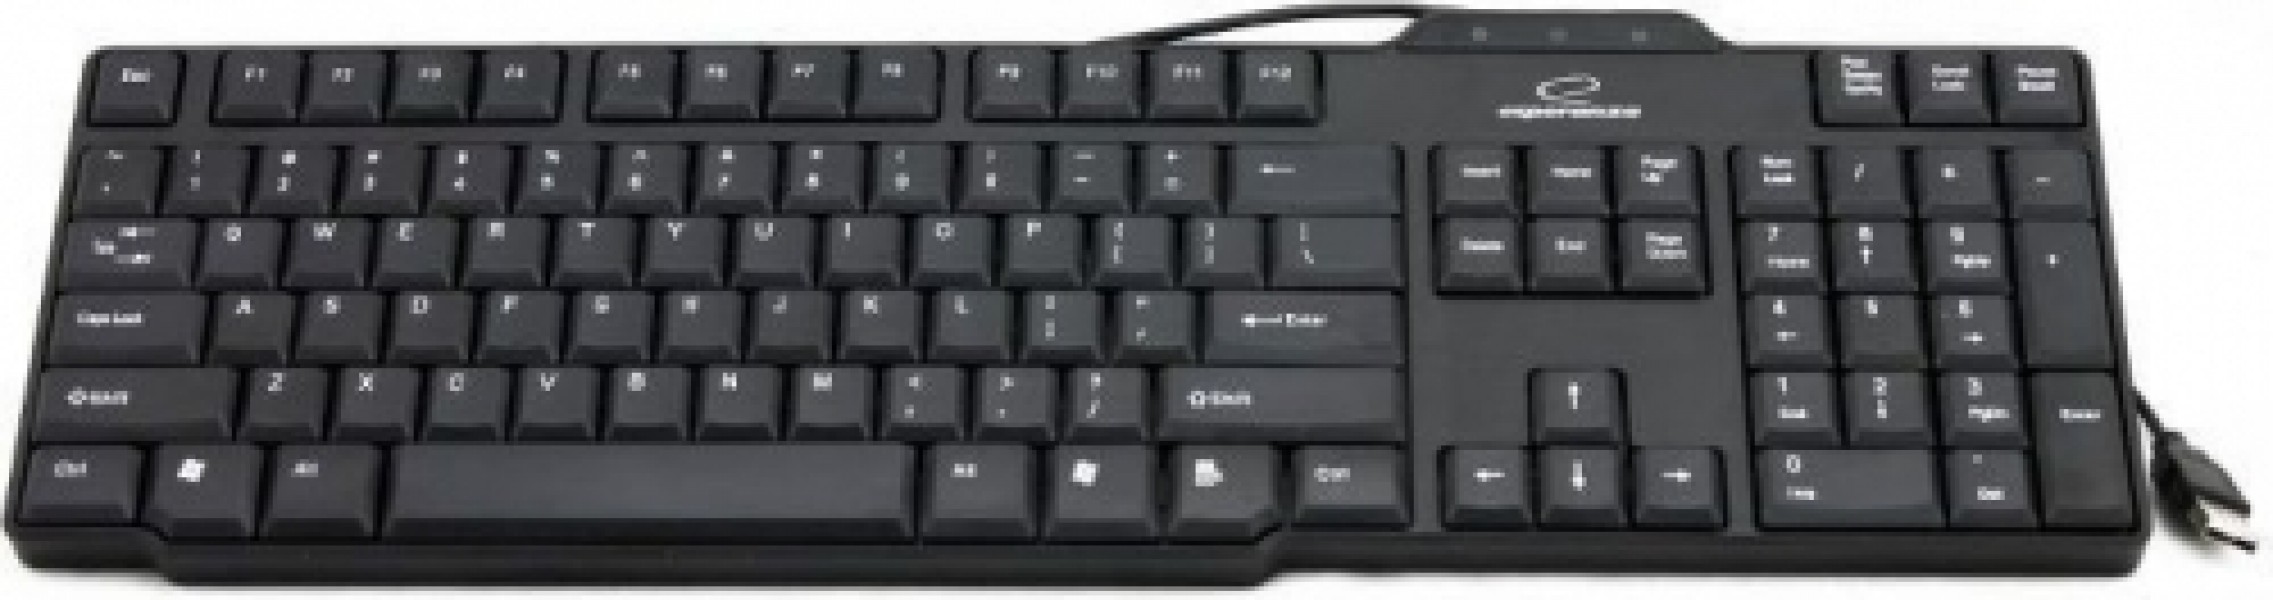 ESPERANZA Keyboard Standard EK116 USB | 104 Keys |BUFFALO